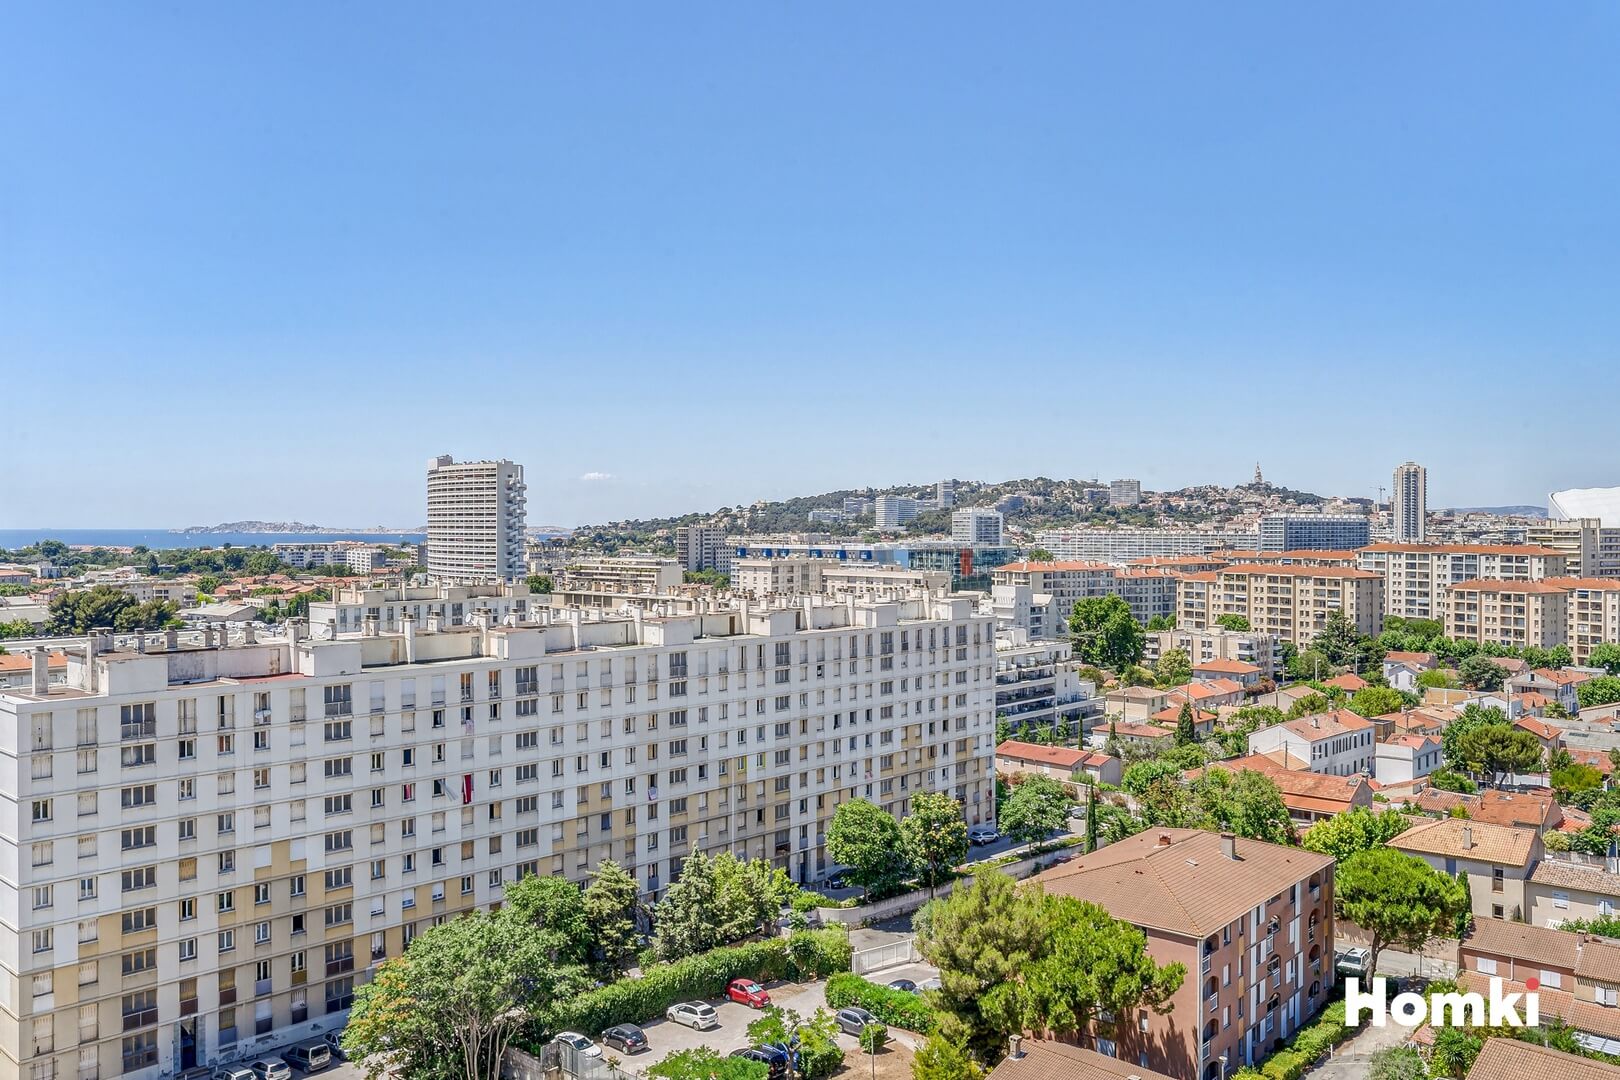 Homki - Vente Appartement  de 70.0 m² à Marseille 13009